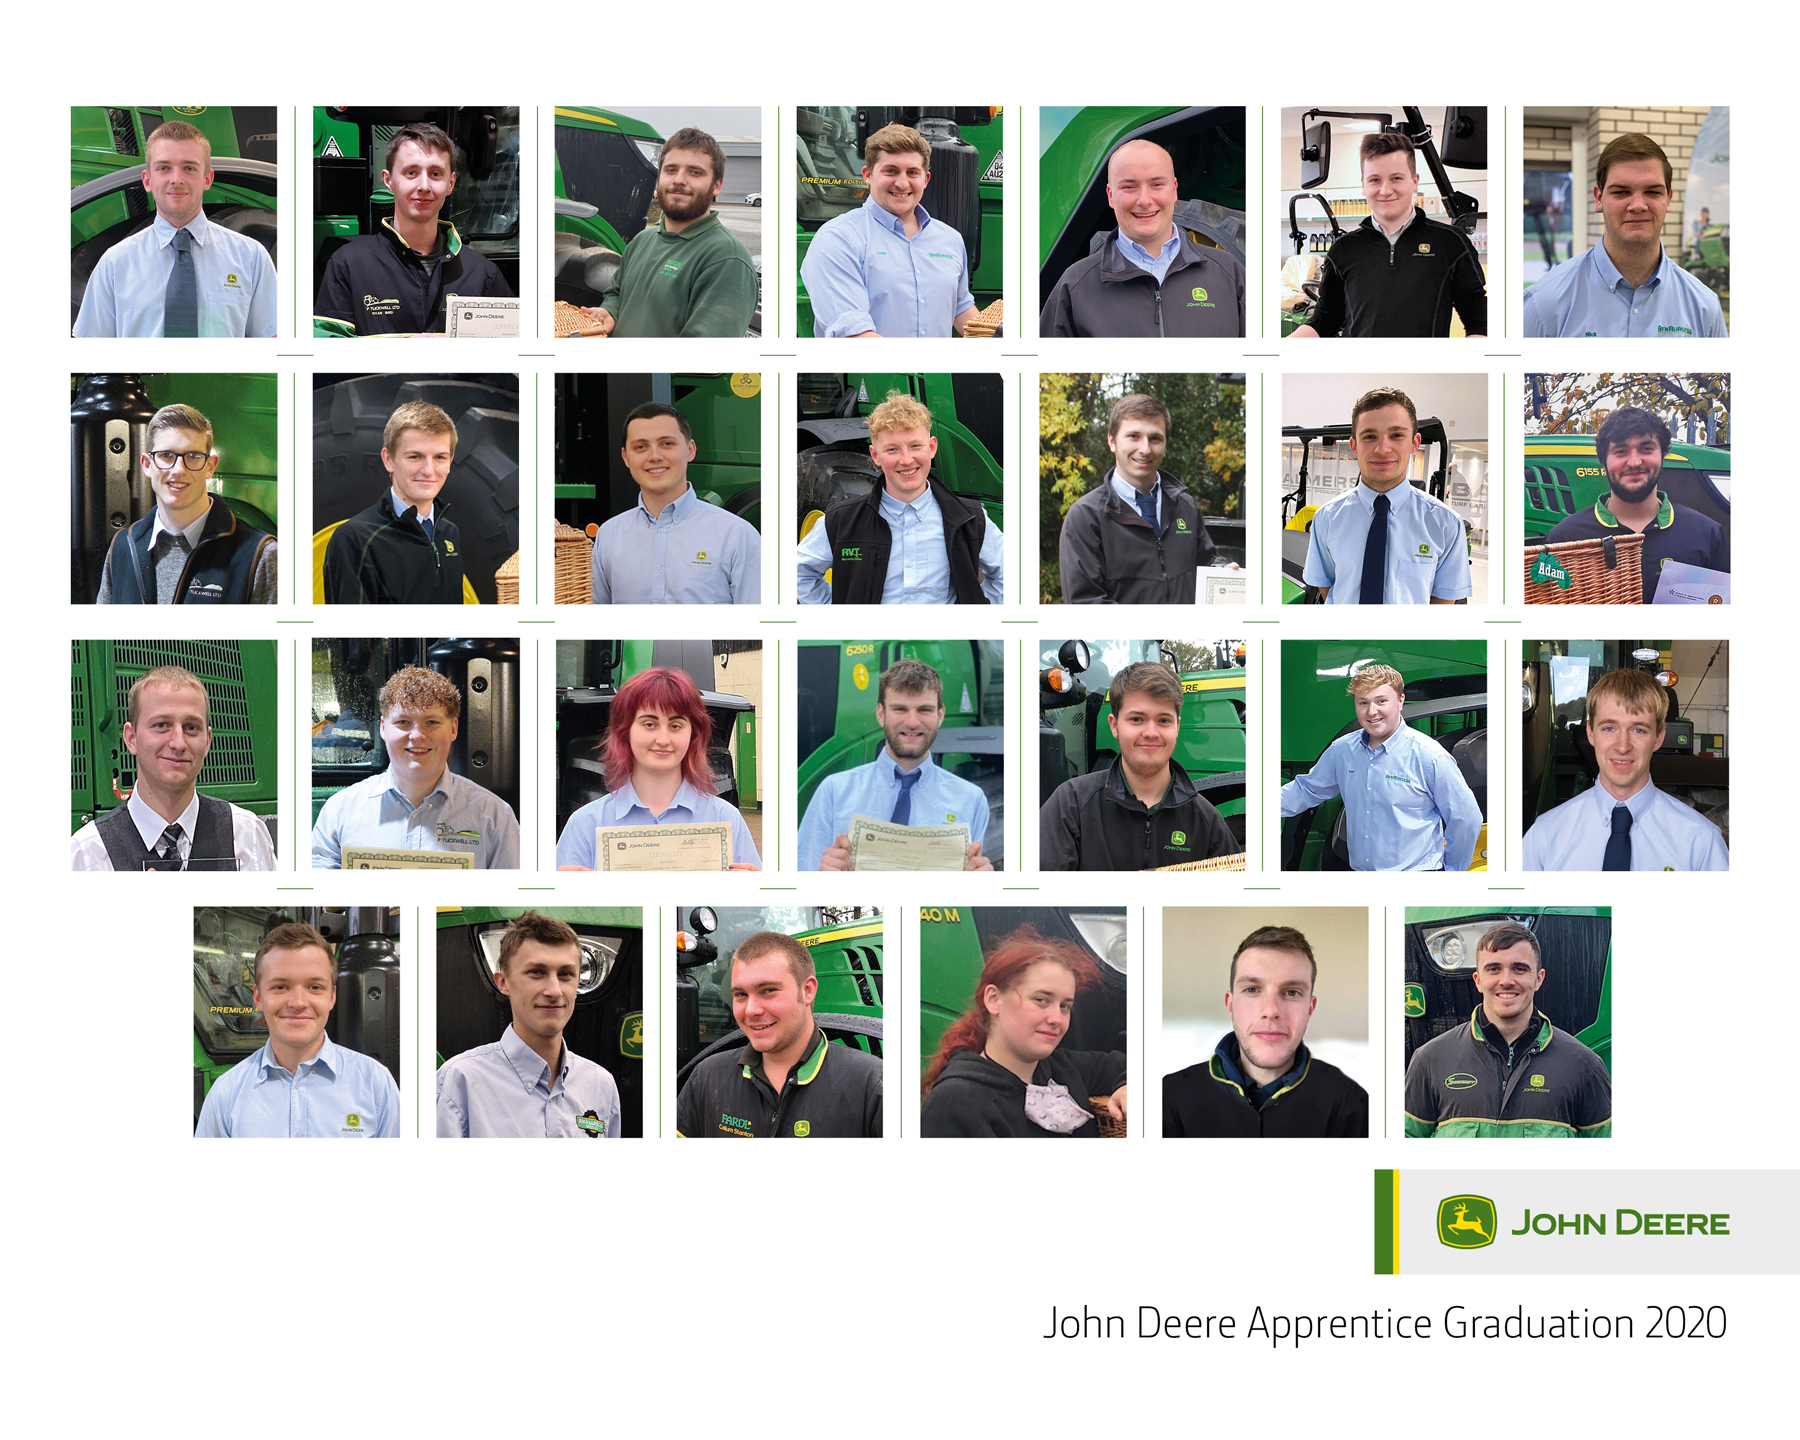 John Deere apprentices graduate in 27 ceremonies